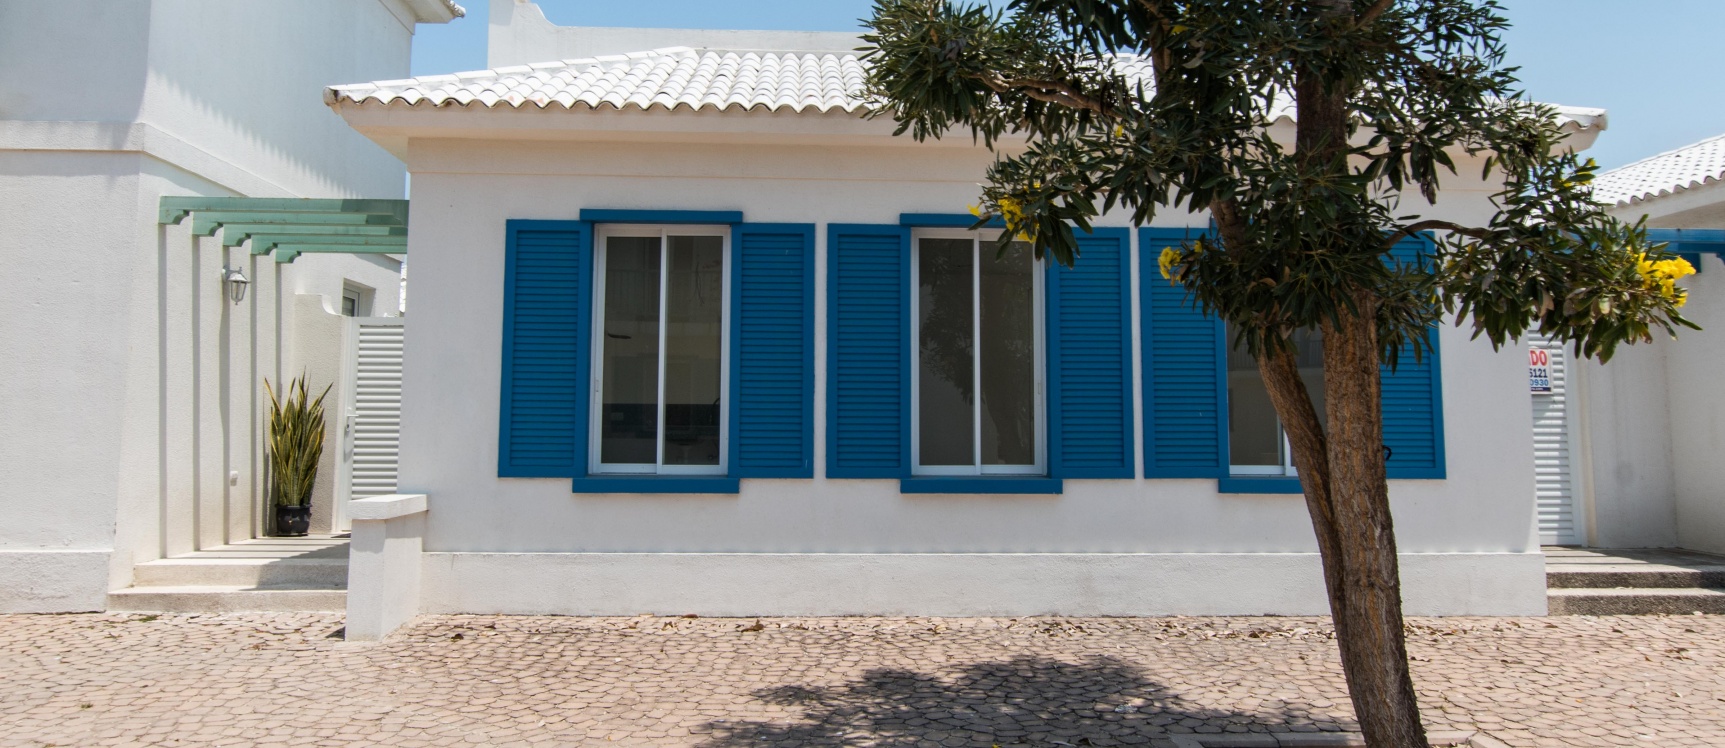 GeoBienes - Casa de 3 habitaciones en venta en Playas, General Villamil - Plusvalia Guayaquil Casas de venta y alquiler Inmobiliaria Ecuador